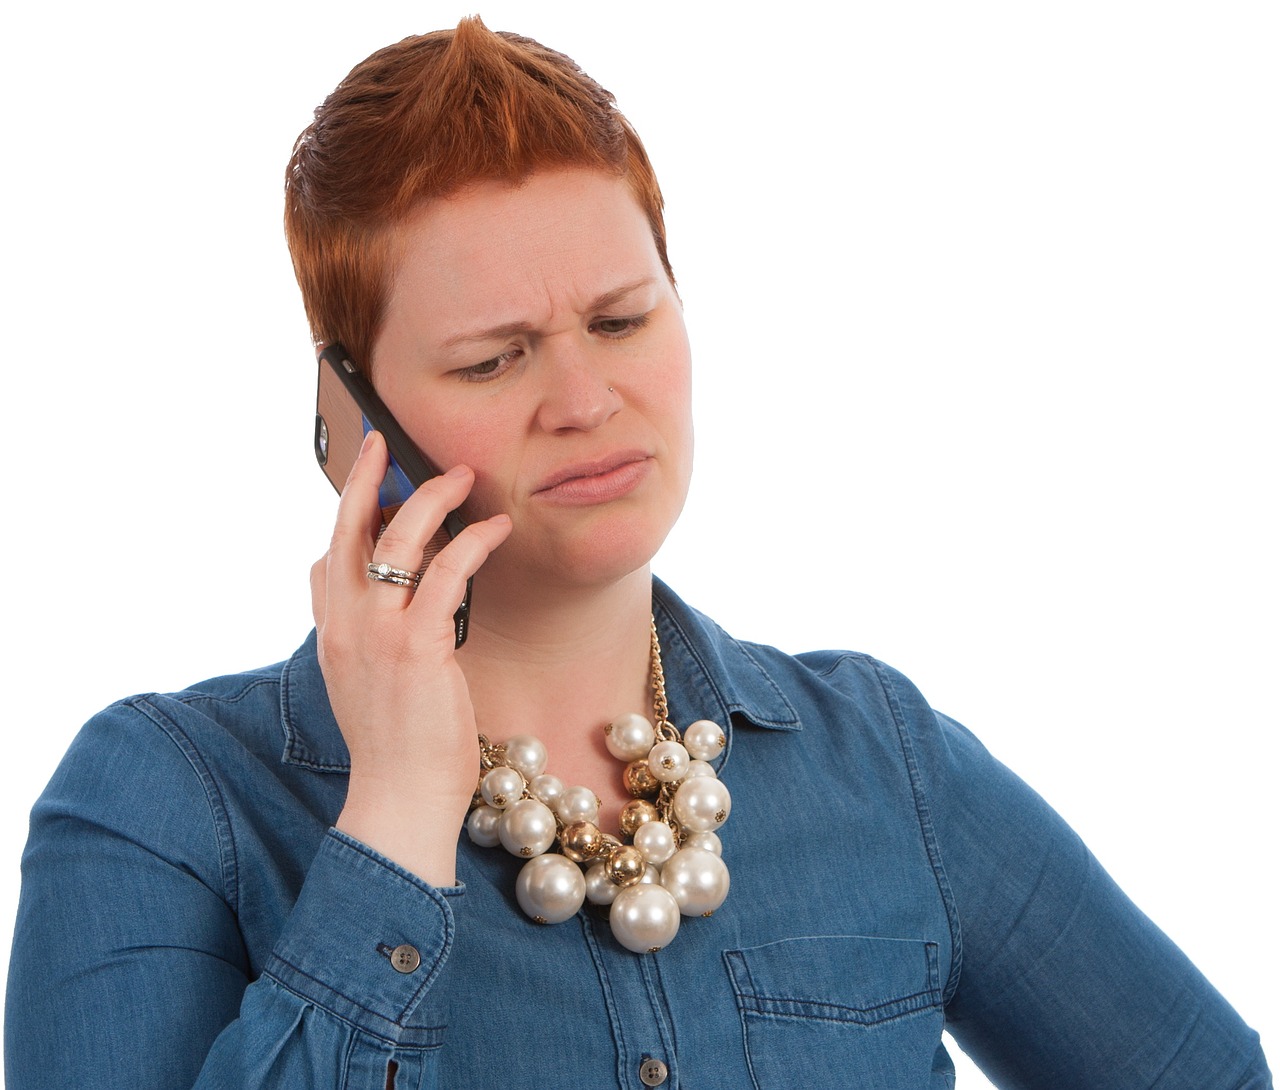 Une femme à l'air sérieuse qui parle au téléphone | Source : Pixabay